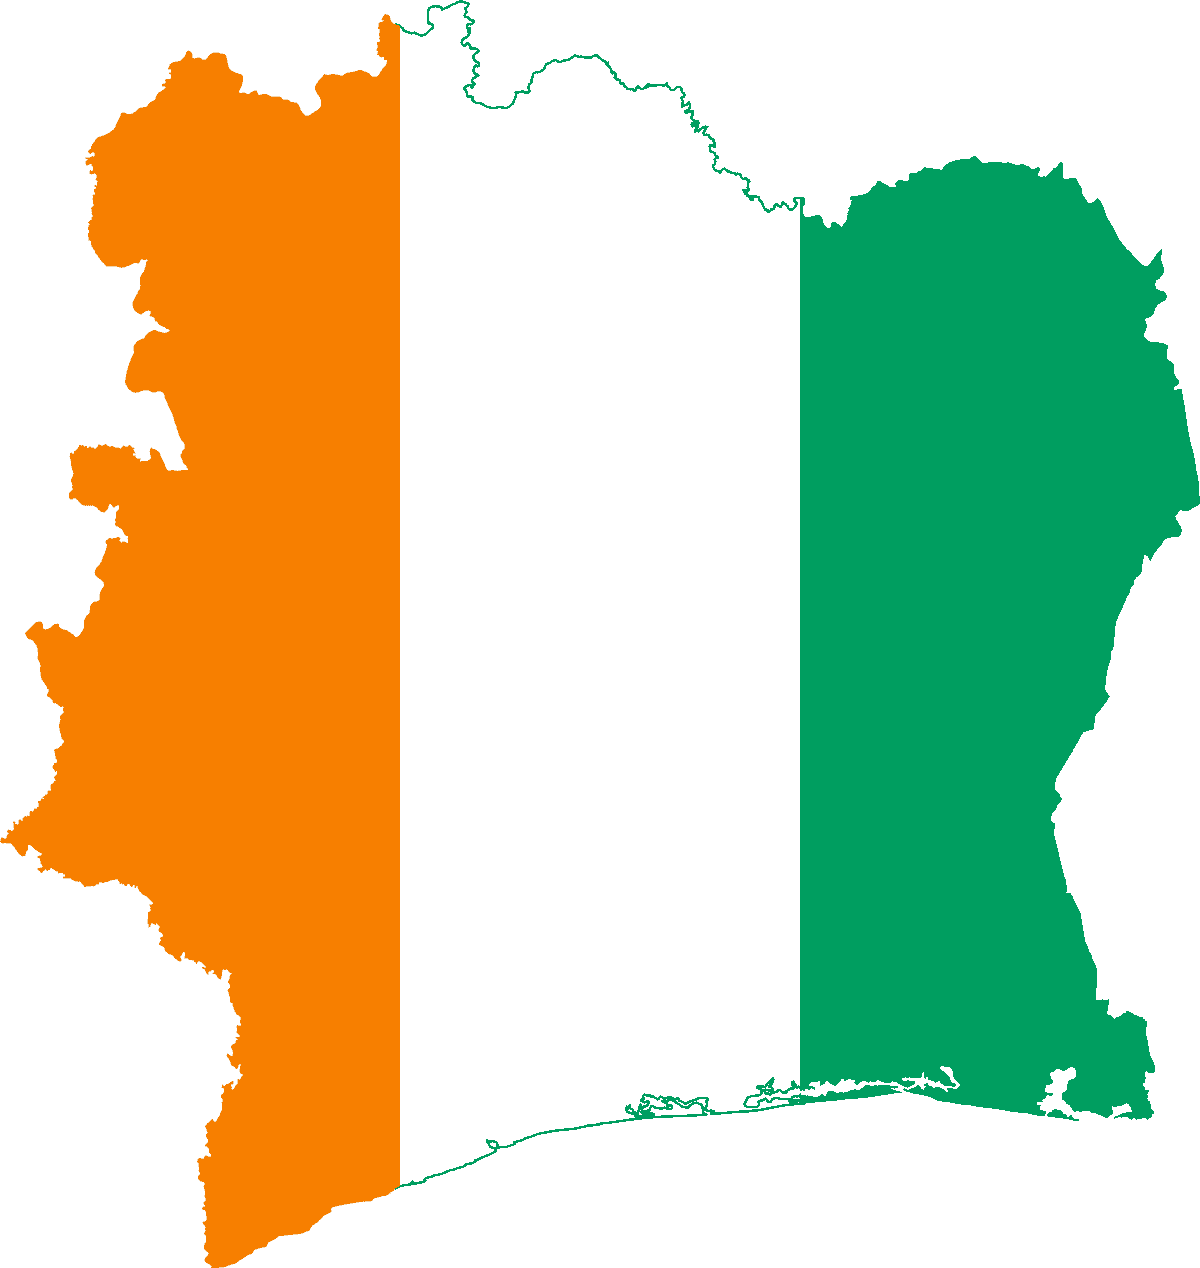 Flag map of Cote d’Ivoire